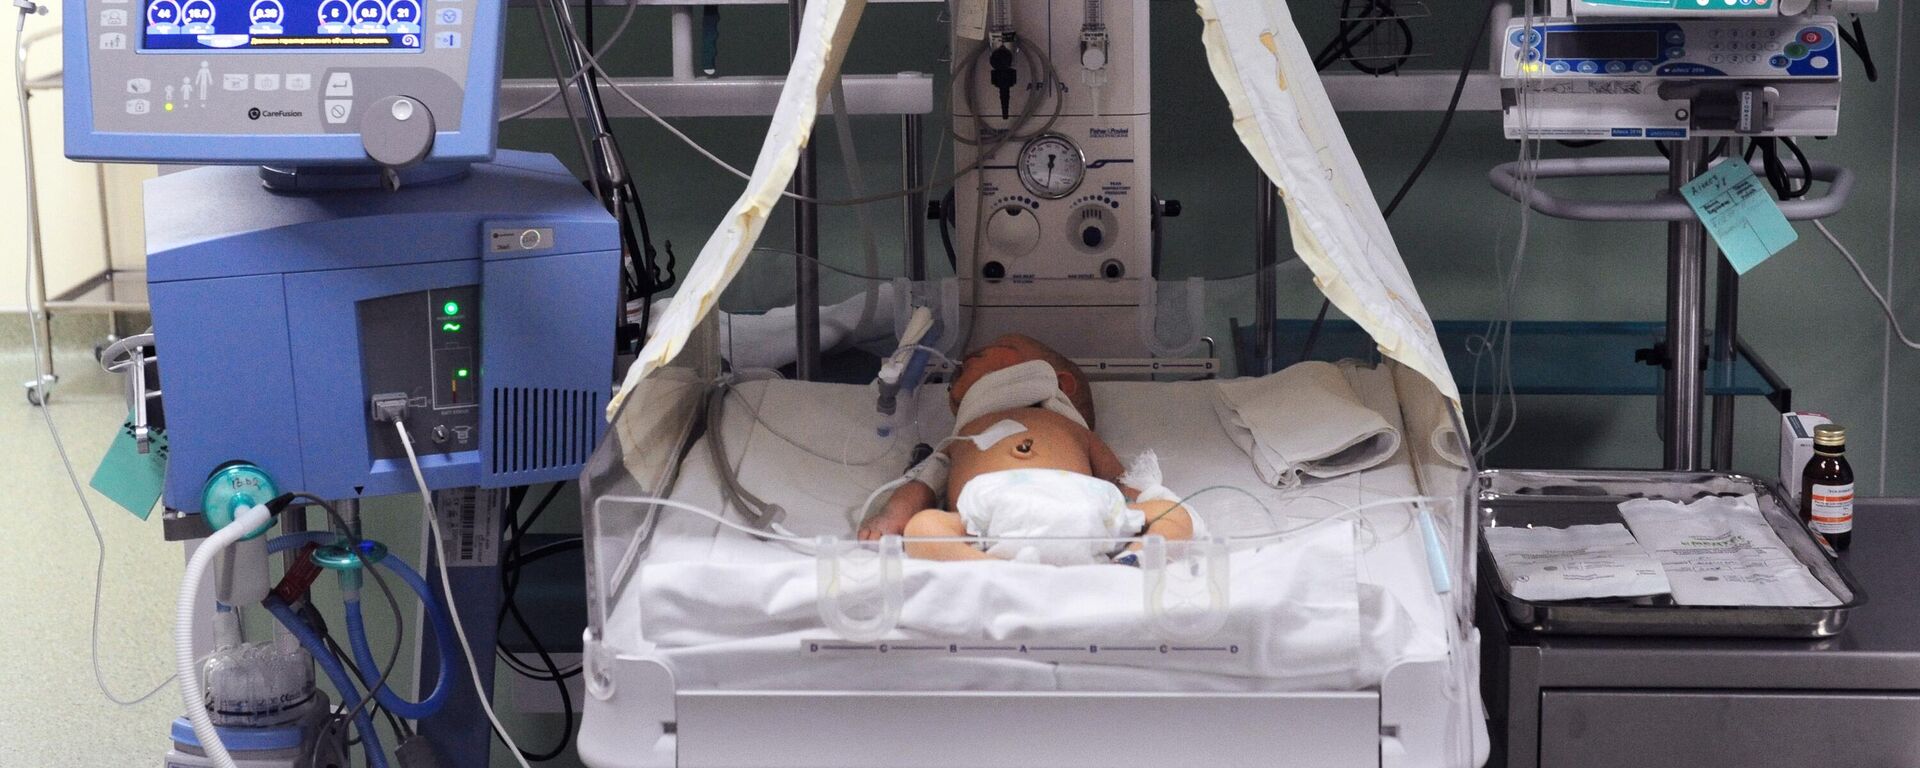 Новорожденный ребенок в кувезе в отделении реанимации и интенсивной терапии новорожденных (недоношенных детей) в перинатальном центре  - Sputnik Таджикистан, 1920, 27.10.2021